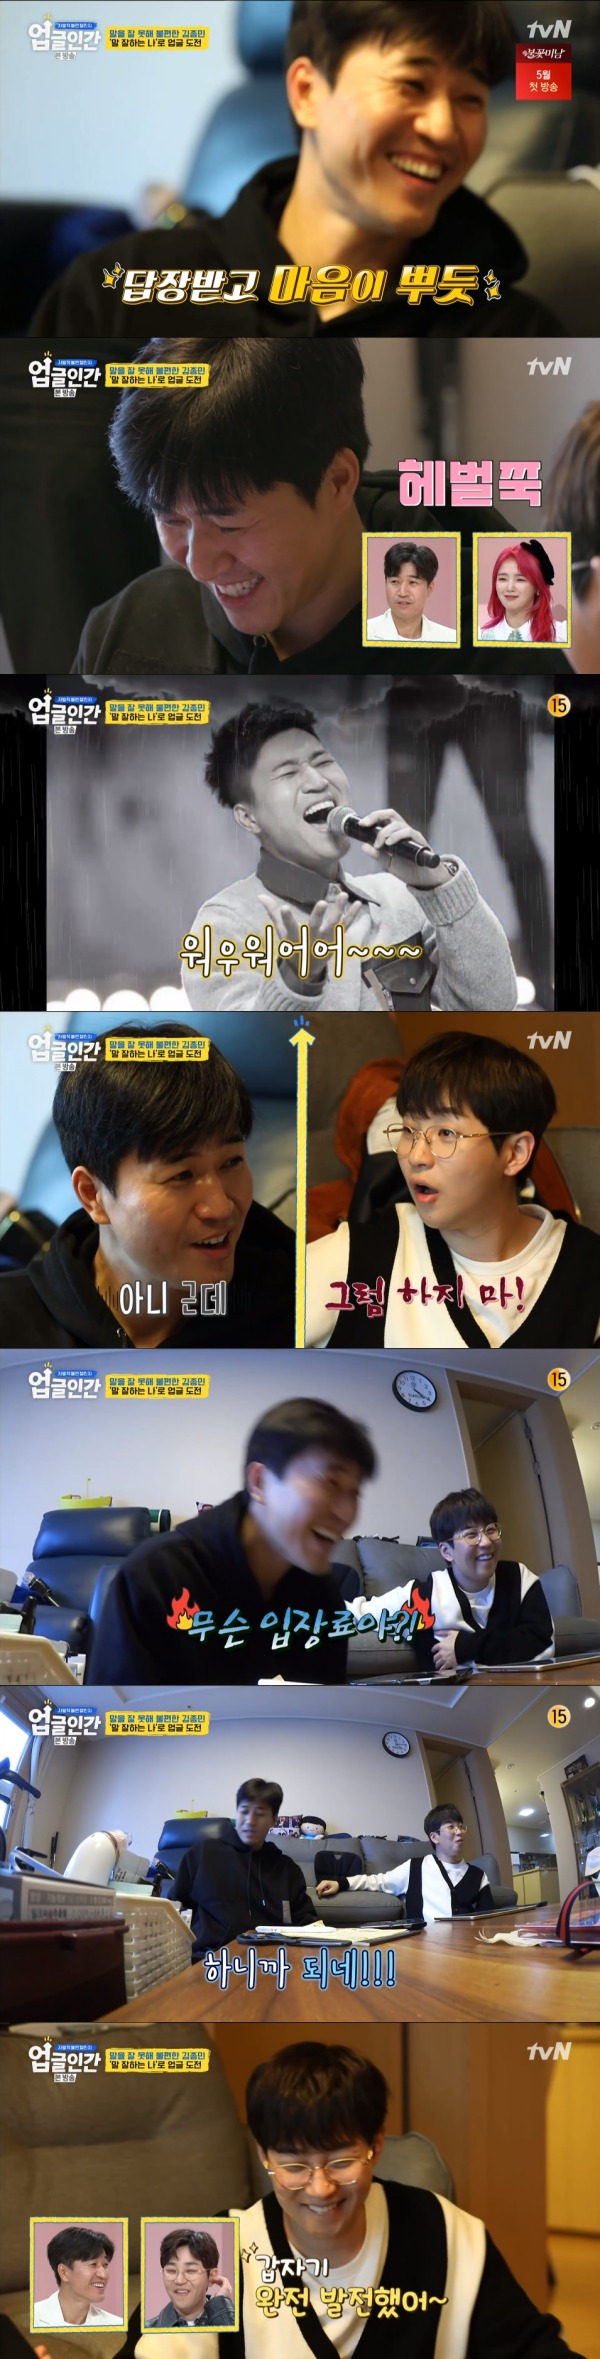 tvN '업글인간' 방송 화면 캡처 © 뉴스1